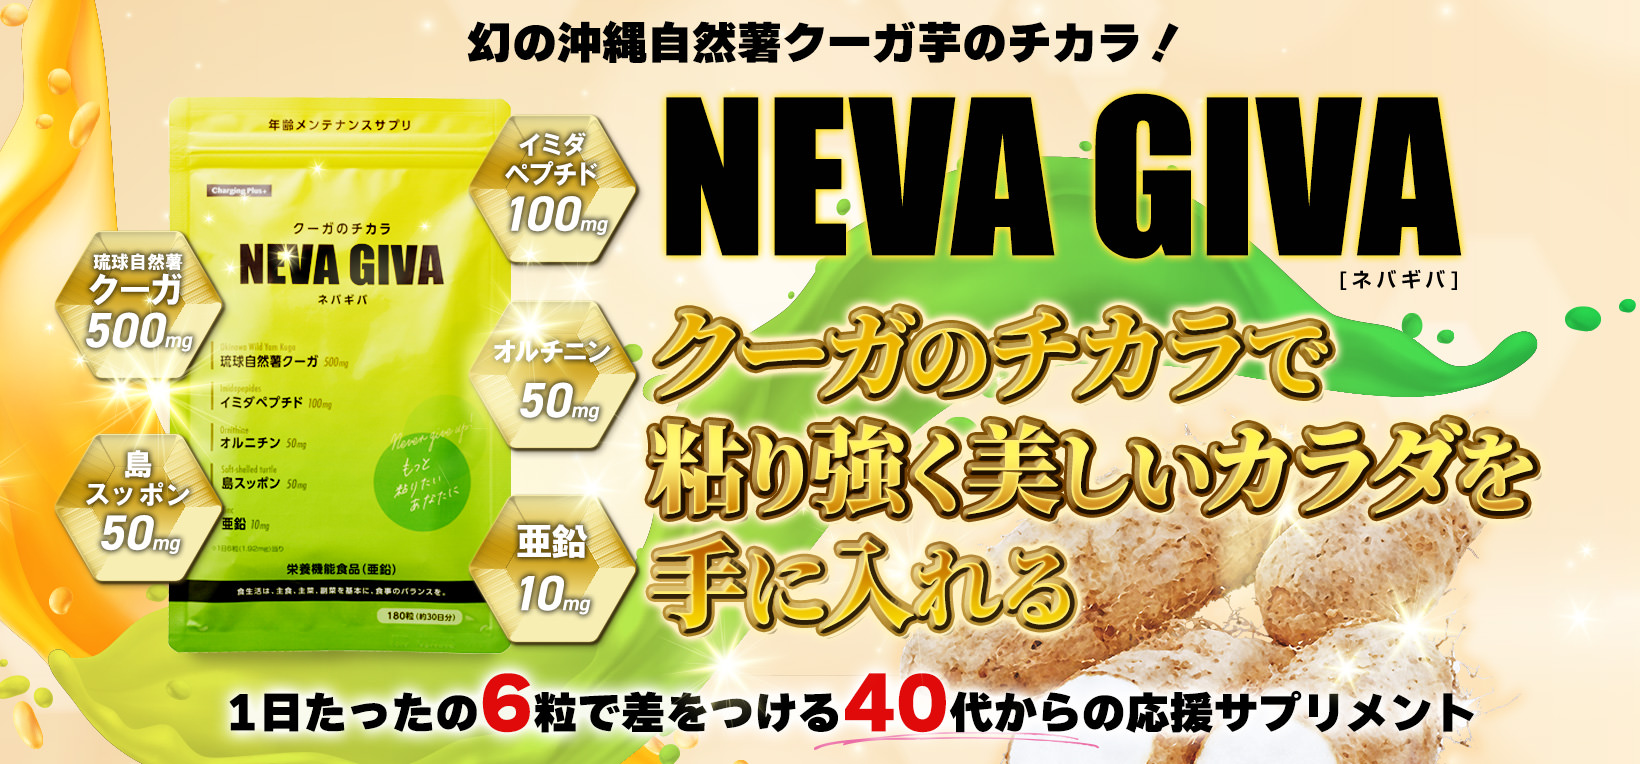 幻の沖縄自然薯クーガ芋のチカラ！NEVA GIVA ネバギバ クーガのチカラで粘り強く美しいカラダを手に入れる 1日たったの6粒で差をつける40代からの応援サプリメント